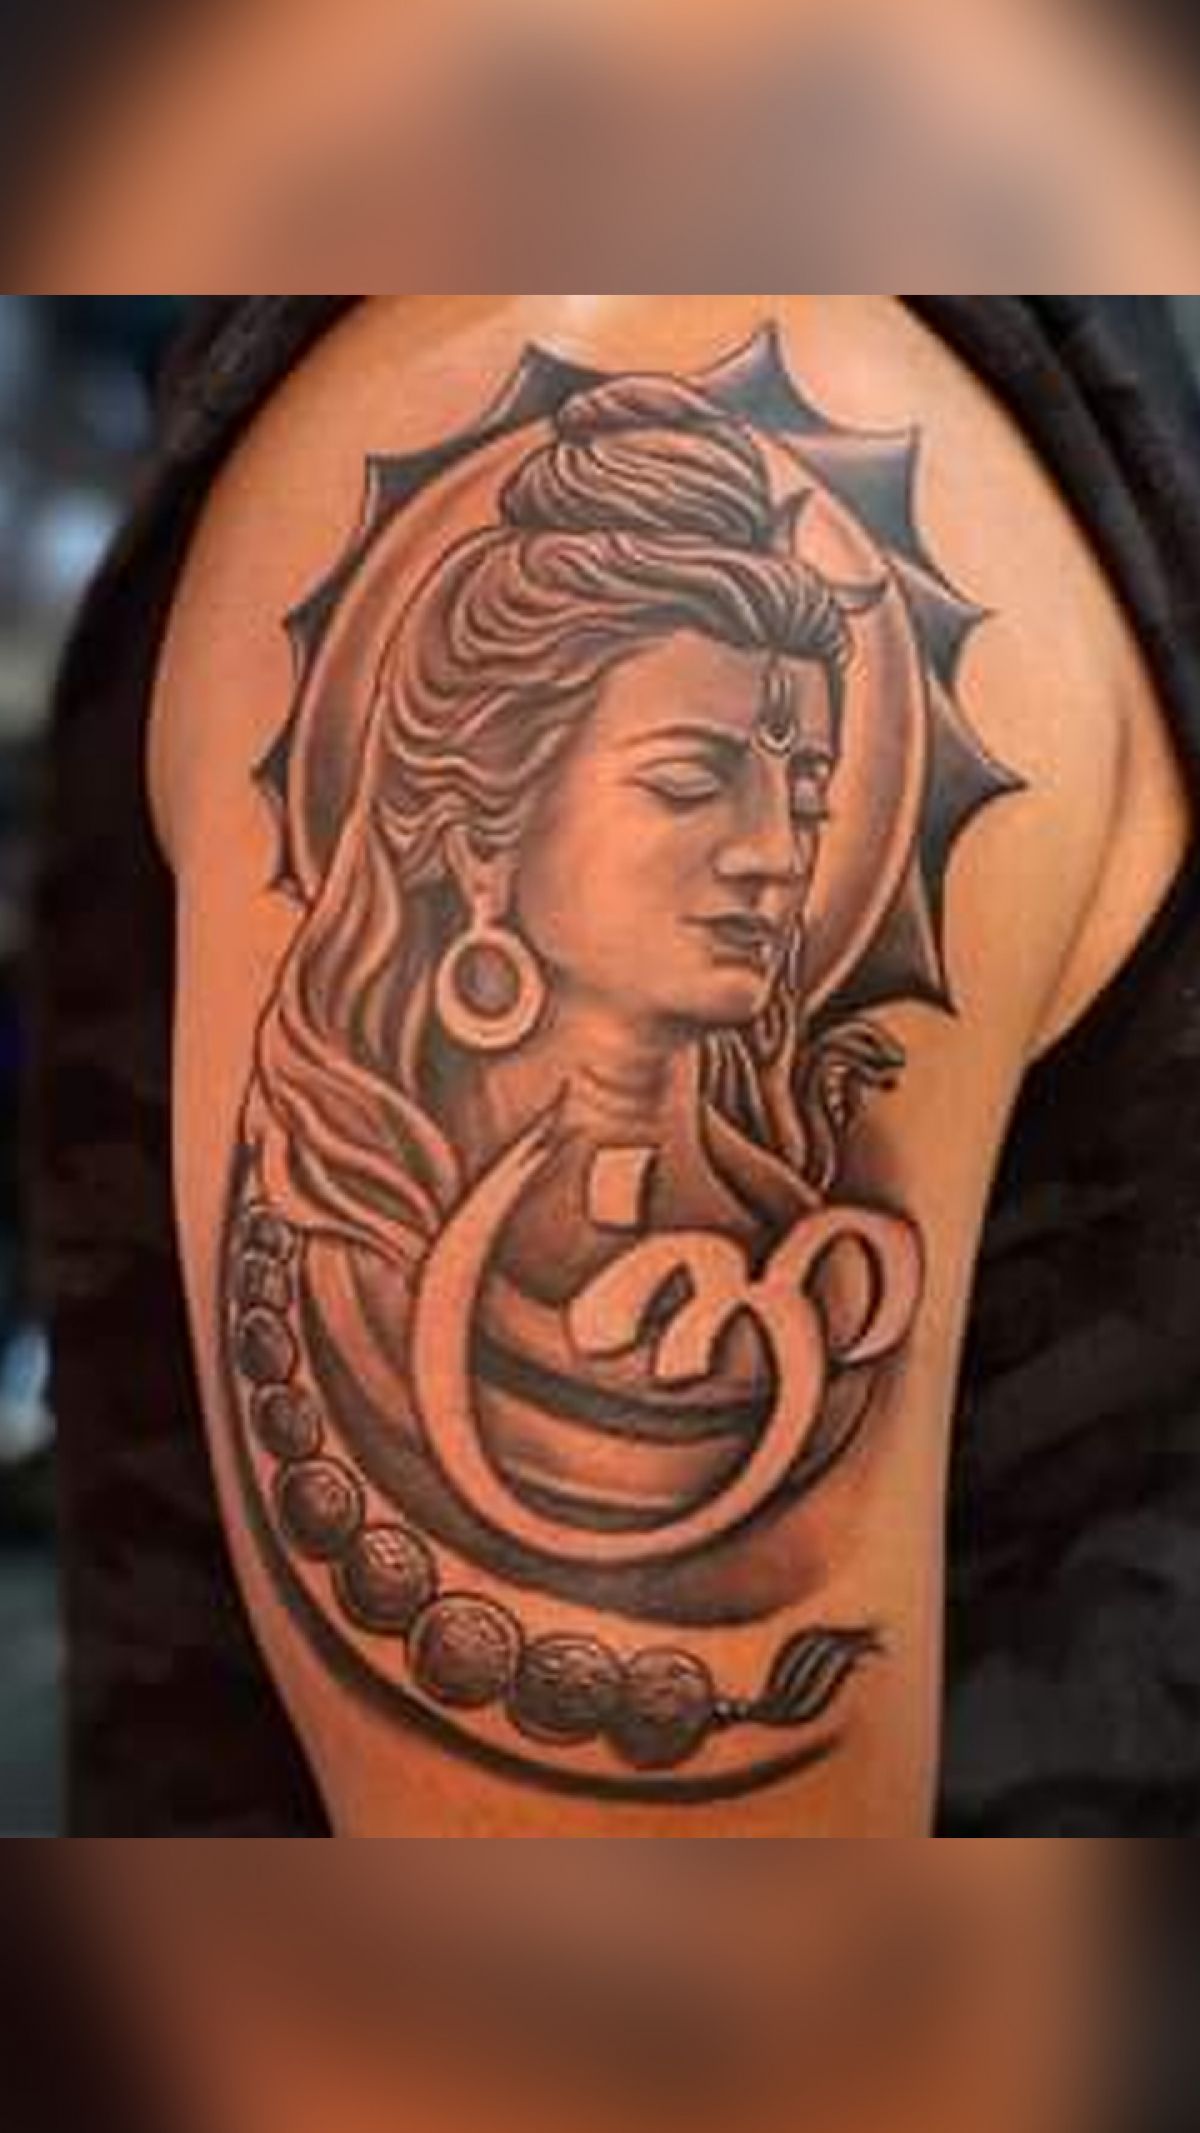 Mahadev trishul tattoo |trishul tattoo |mahadev tattoo | samurai tattoo  mehsana |9725959677 | Small tattoos for guys, Bholenath tattoo, Trishul  tattoo designs